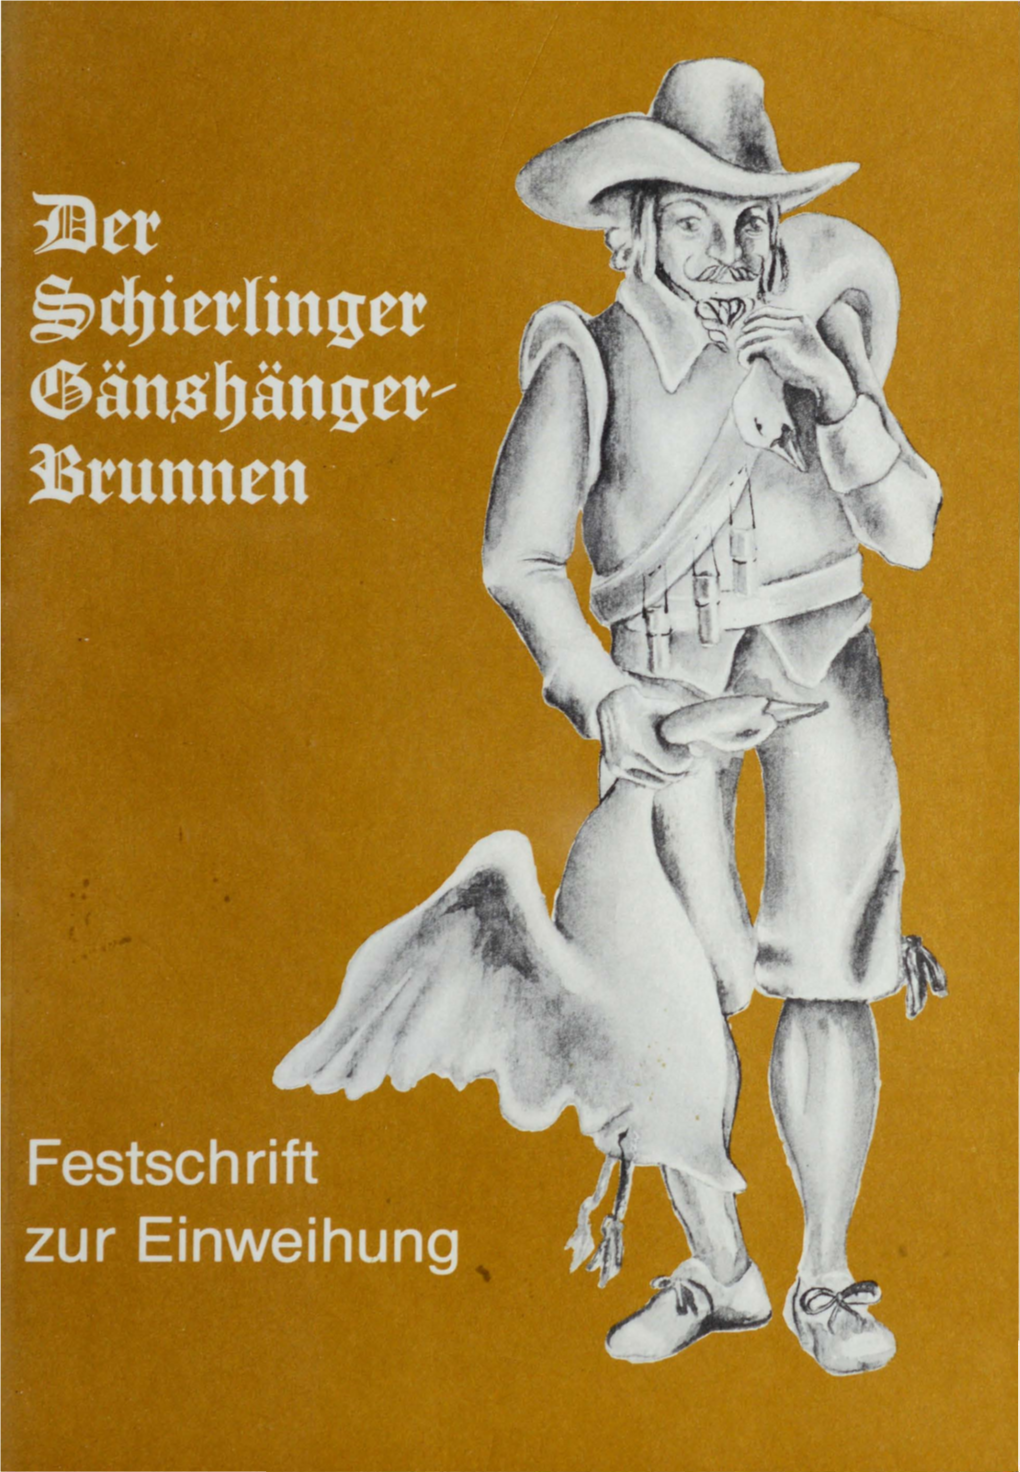 Festschrift Zur Einweihung Des "Gänshänger-Brunnens"